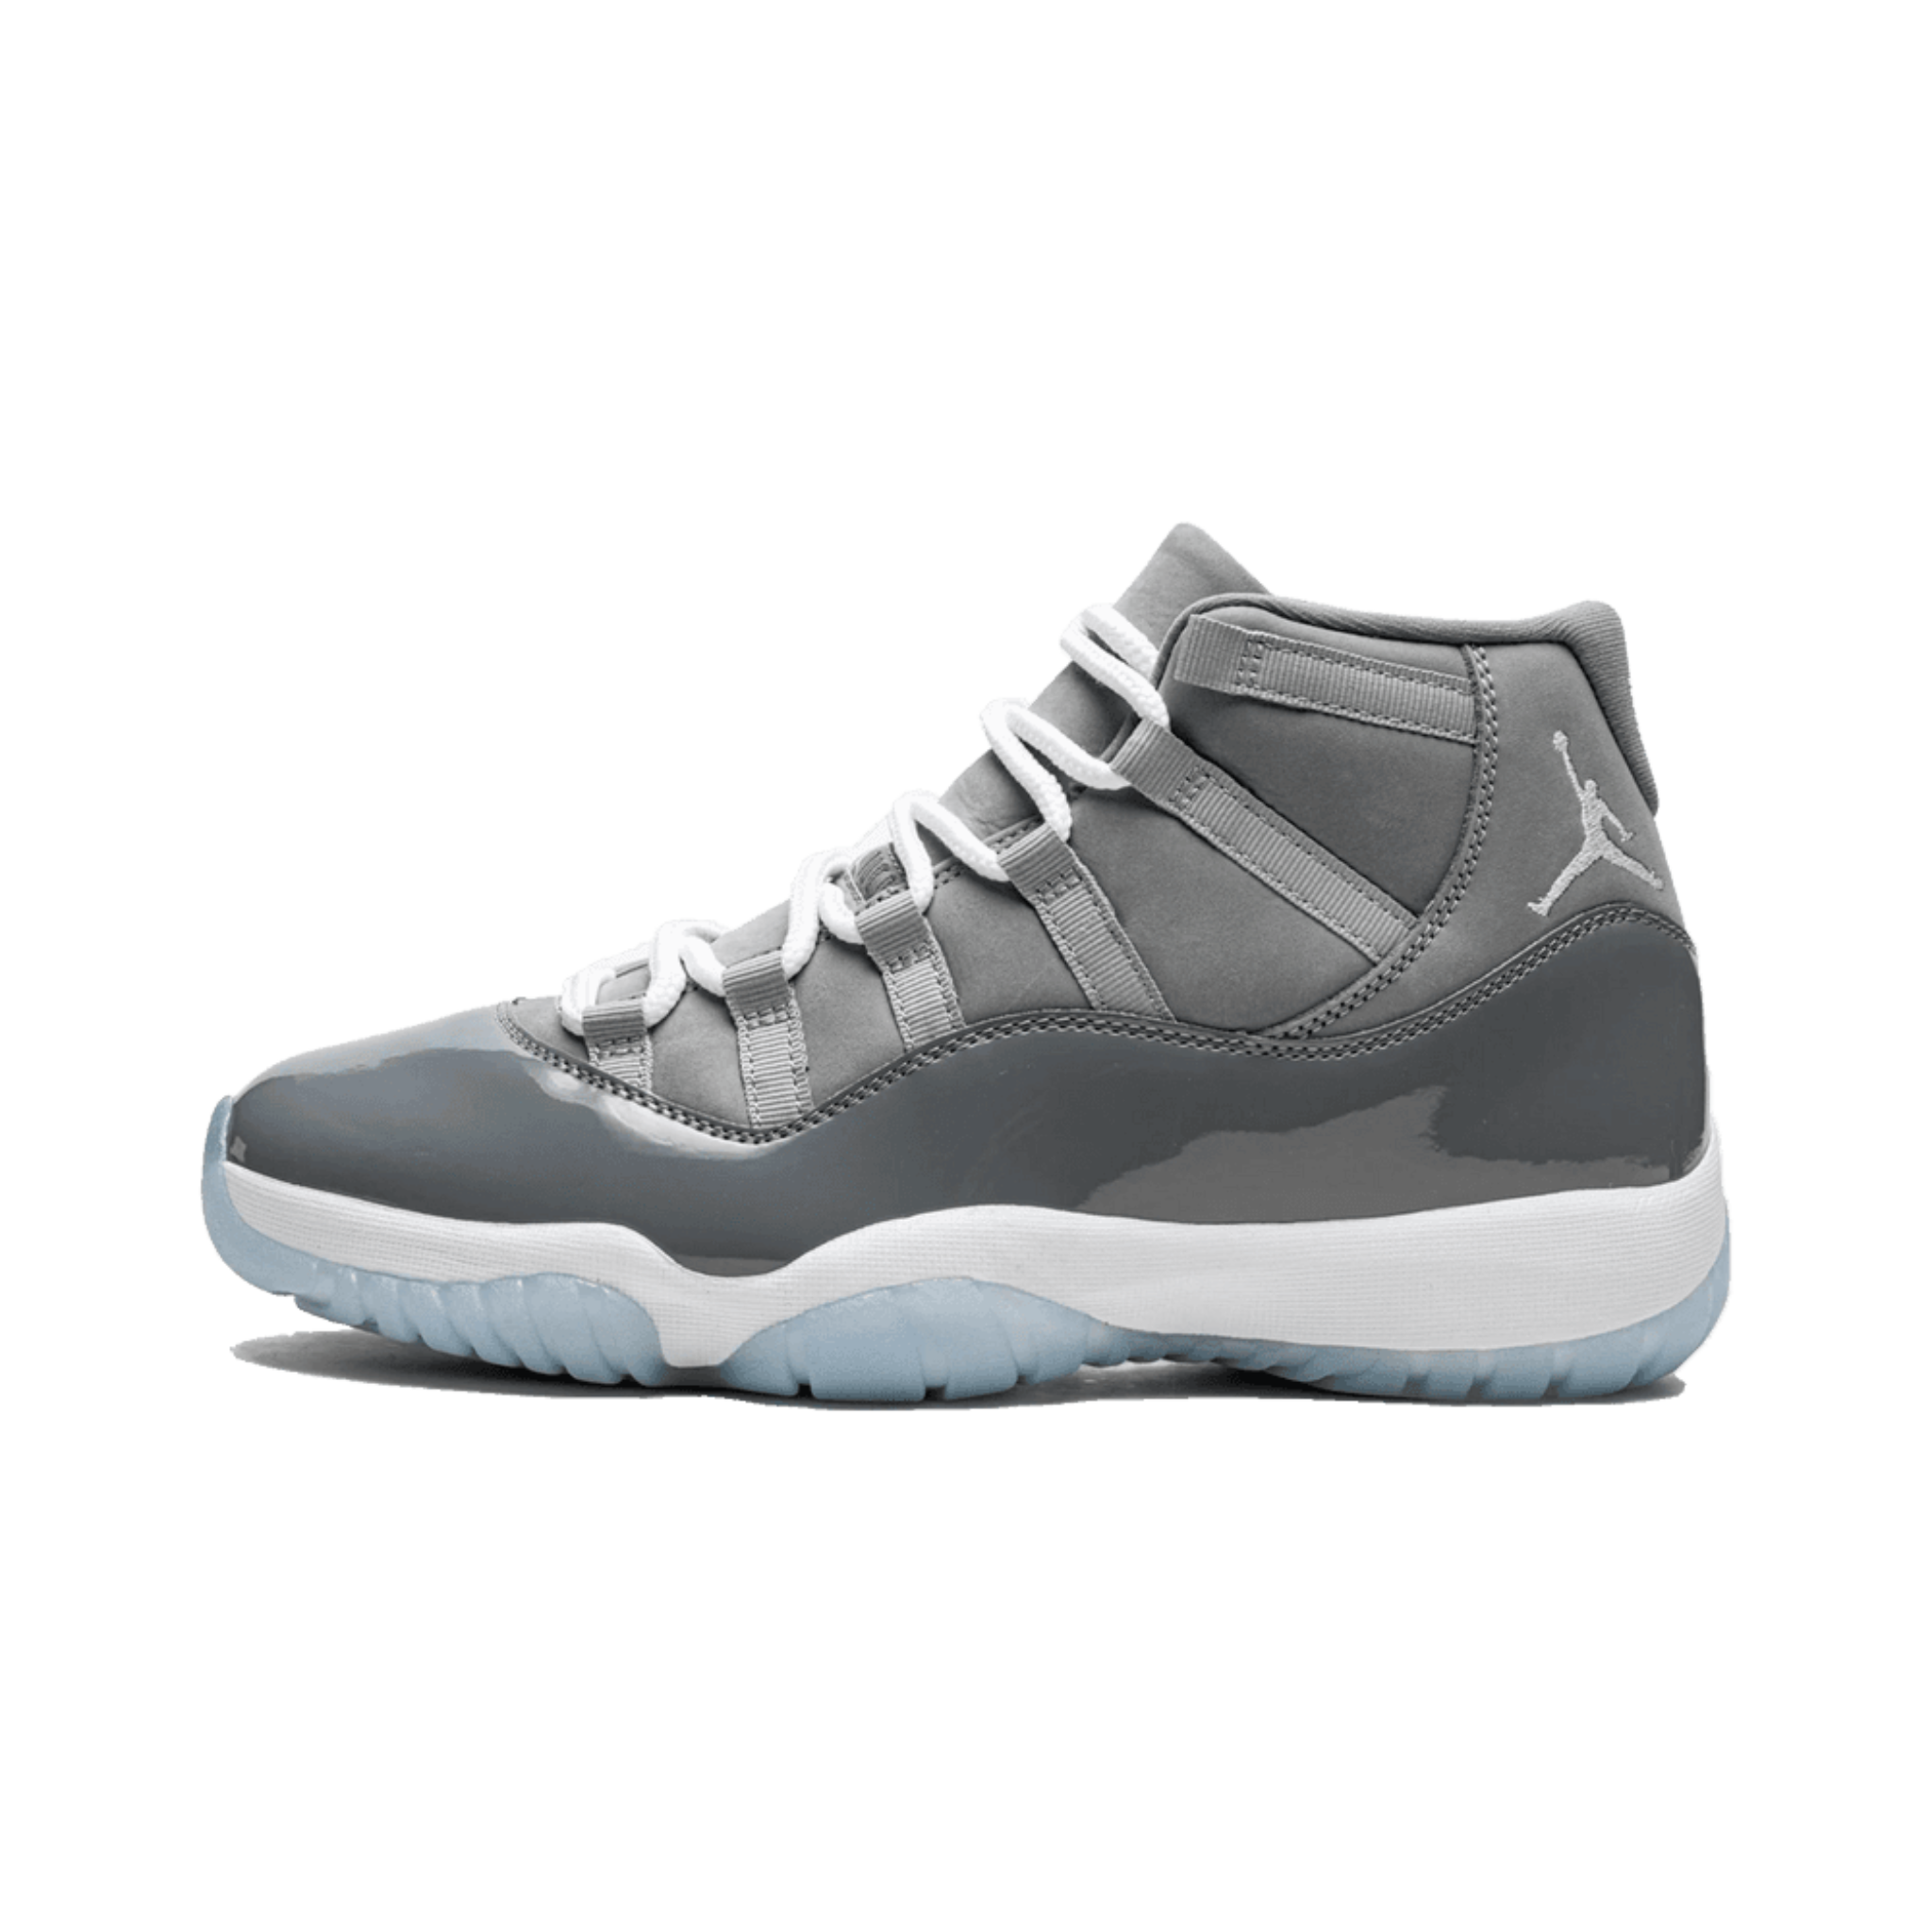 Jordan 11 Retro Cool Grey (2021) CT8012-005 